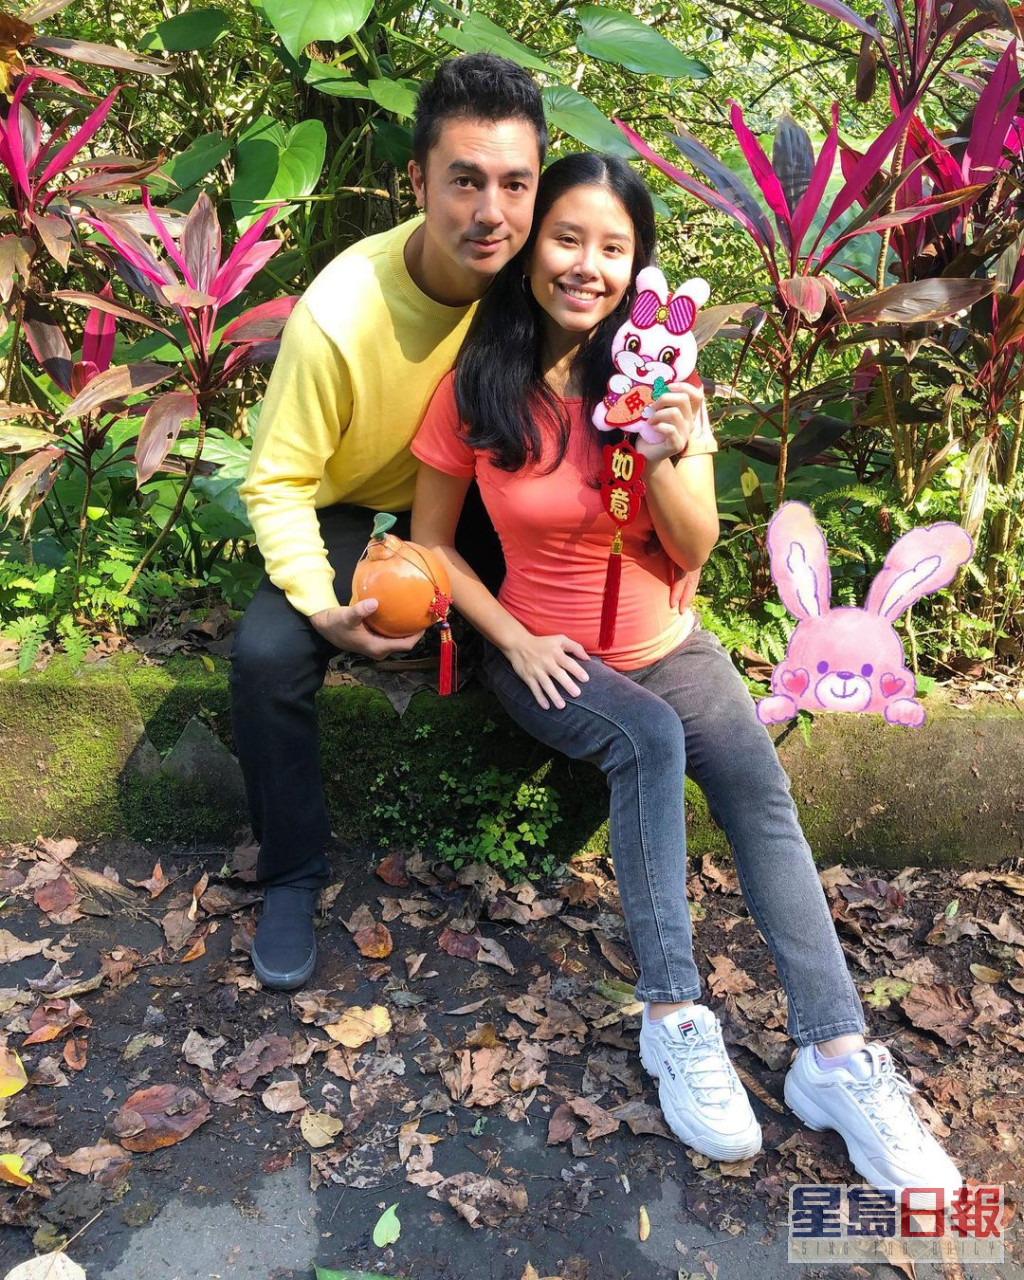 班傑於2019年與拍拖三年的泰籍華裔女友Cindy在台灣登記結婚。